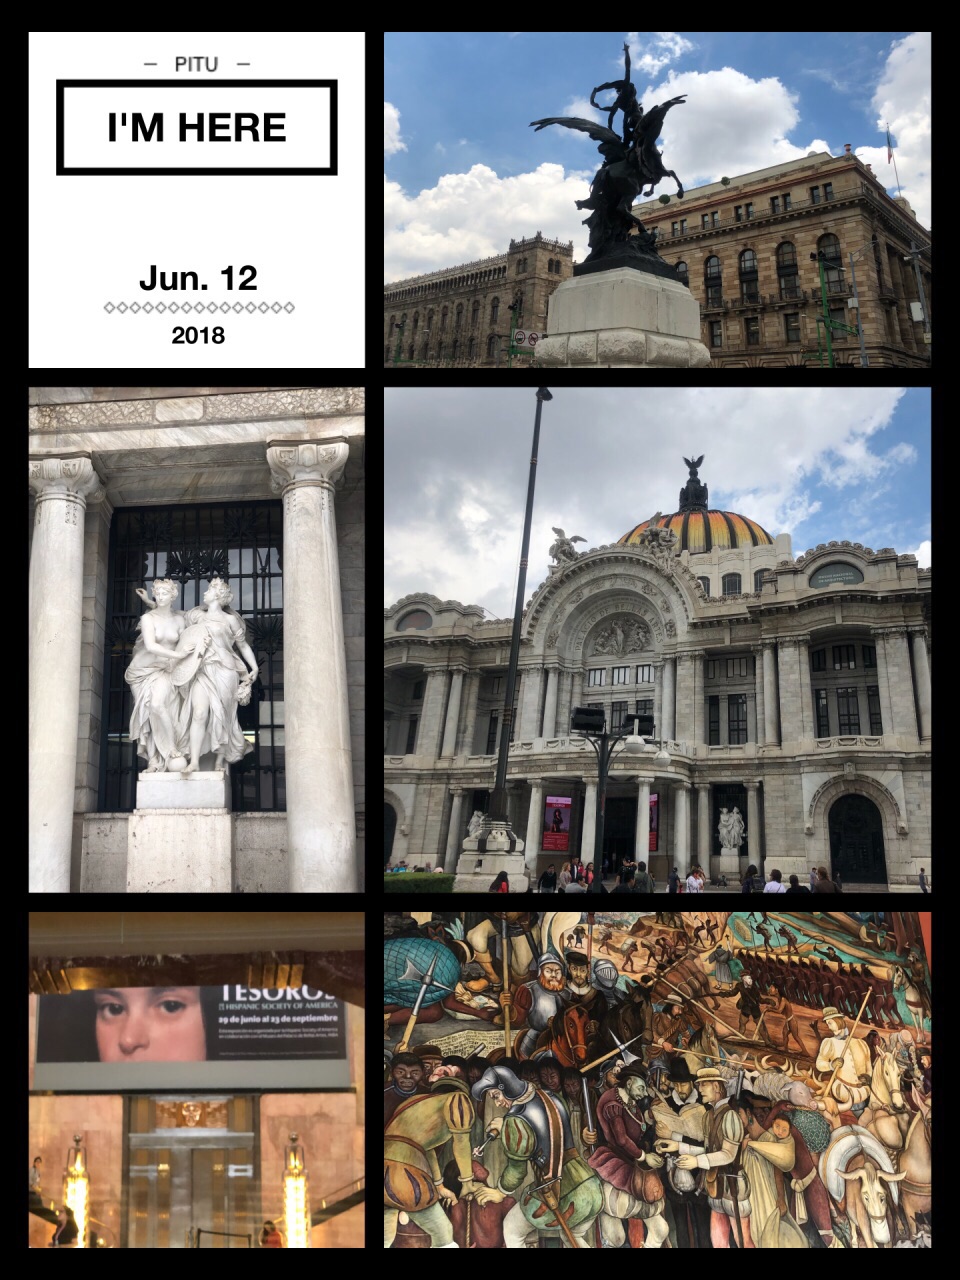 #激情一夏#水菱环球之旅の墨西哥🇲🇽国家美术馆